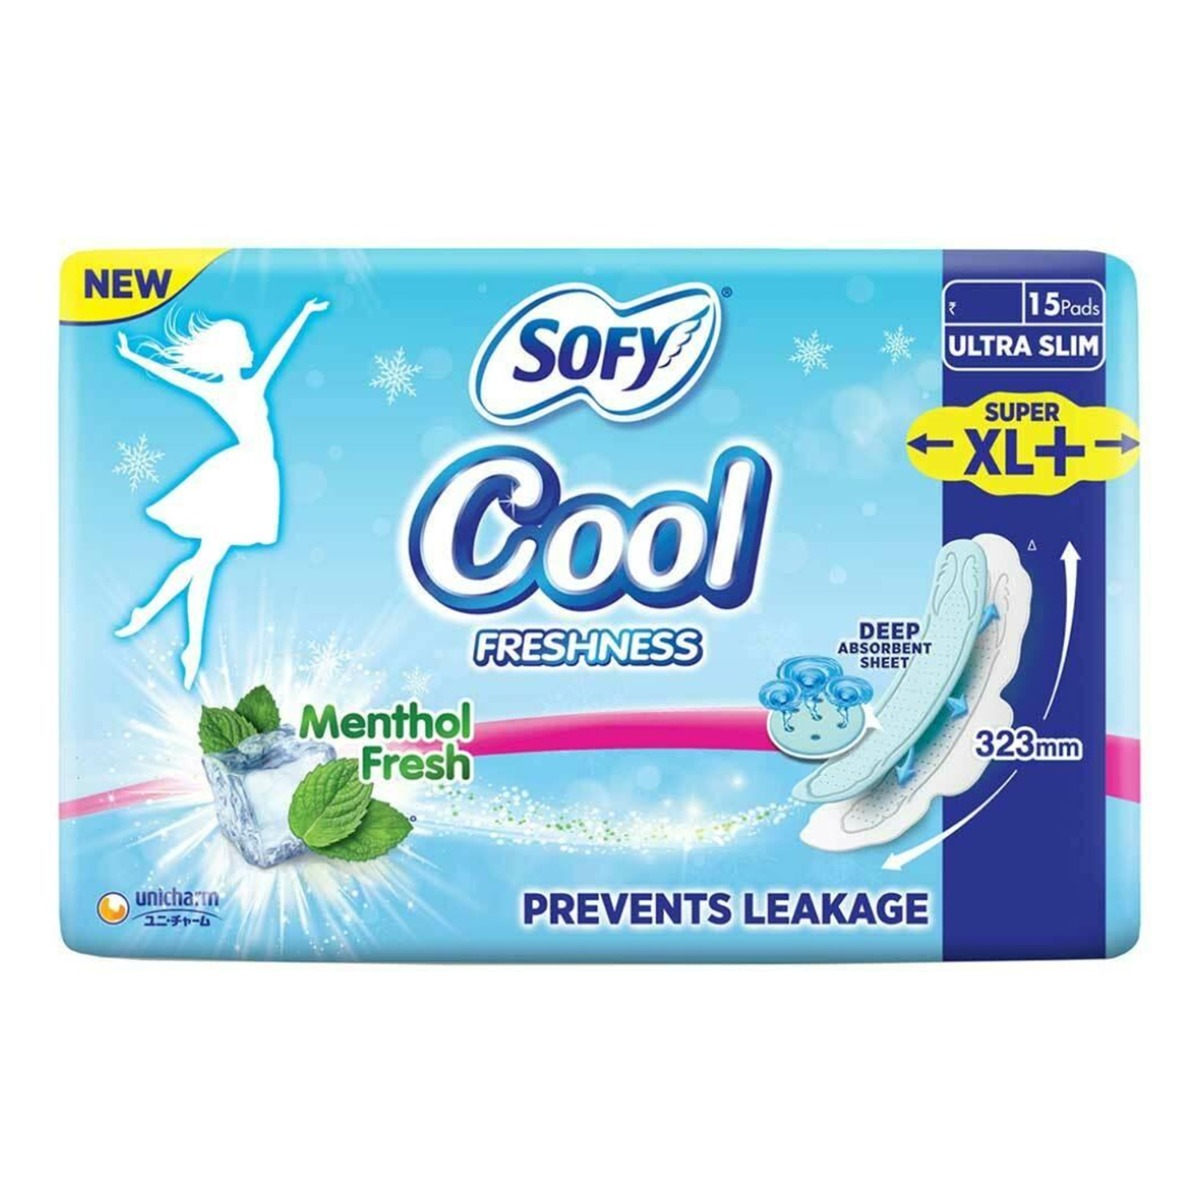 Sofy Cool Menthol Fresh Ultra Slim Super Xl+, 15Pads